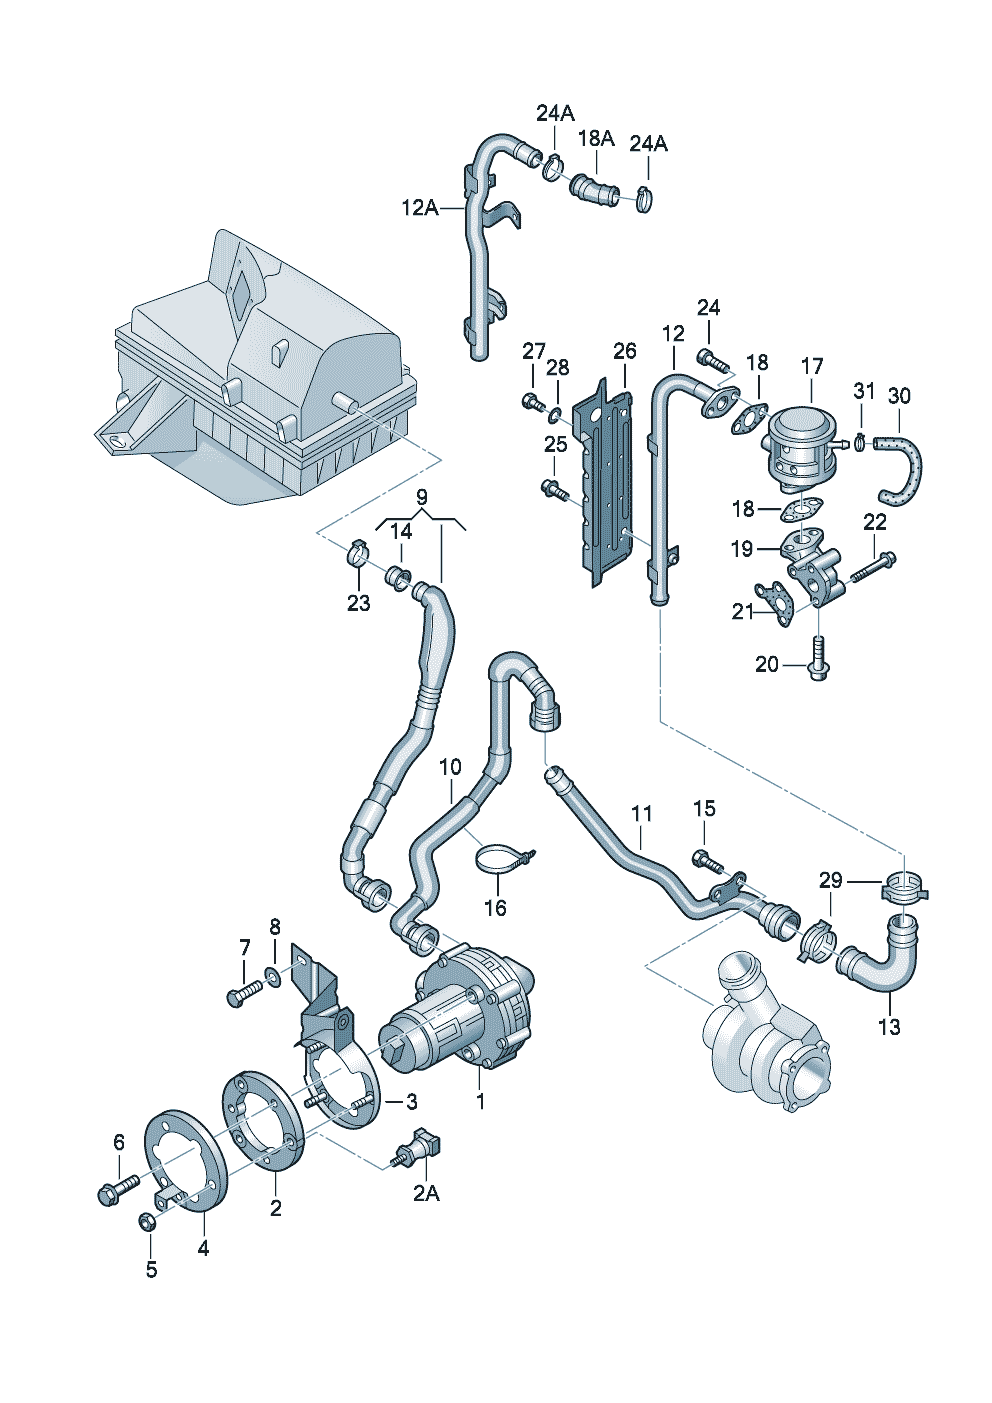 Secondary air pump 1.8ltr. - Audi A6/Avant - a6